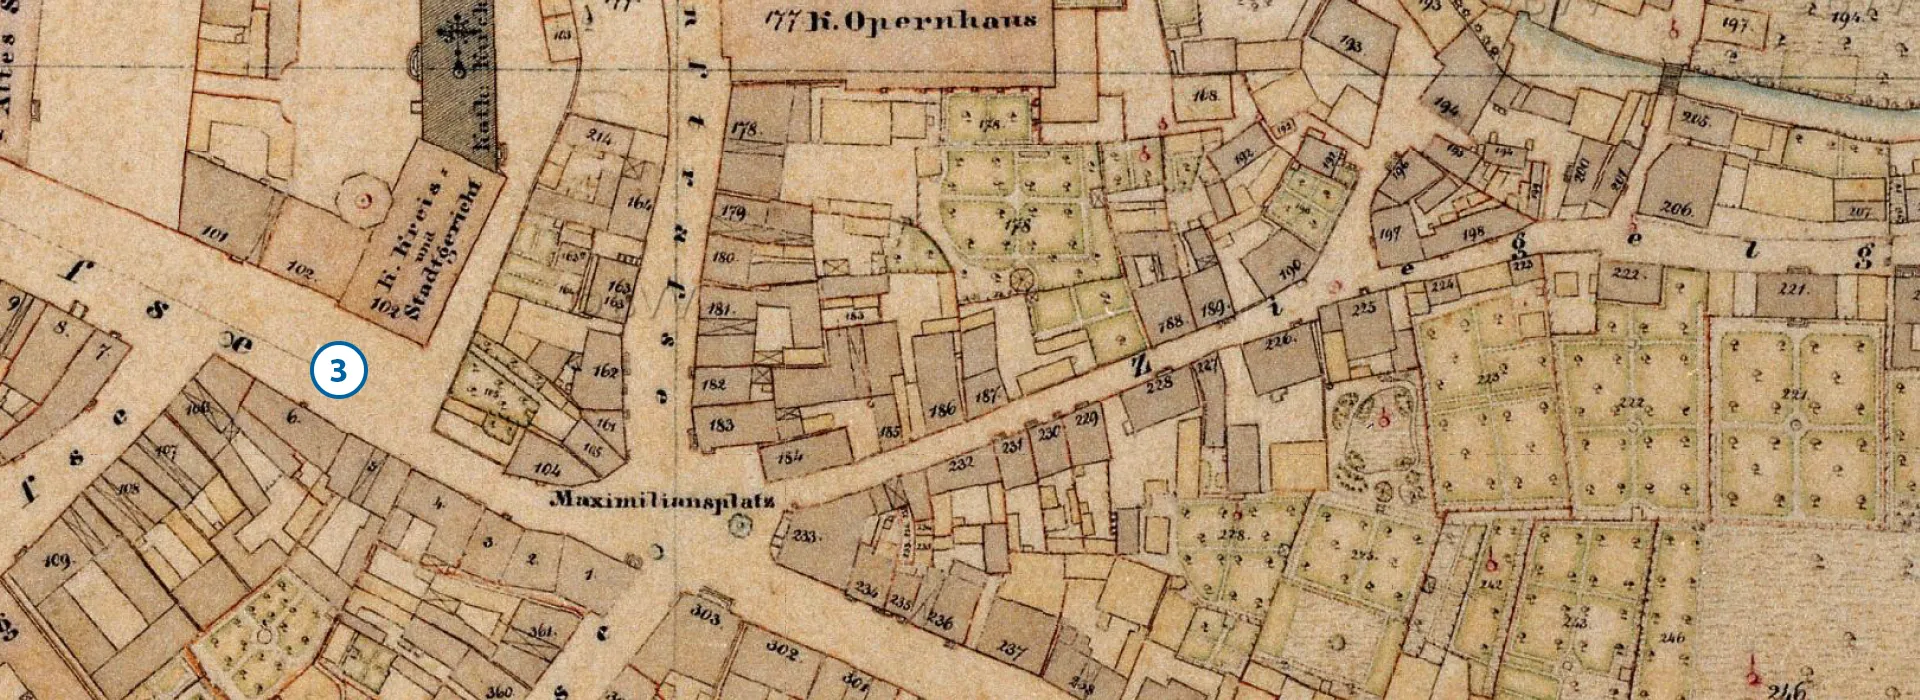 Alte Stadtkarte mit der Zahl an der Stelle des aktuellen Standorts